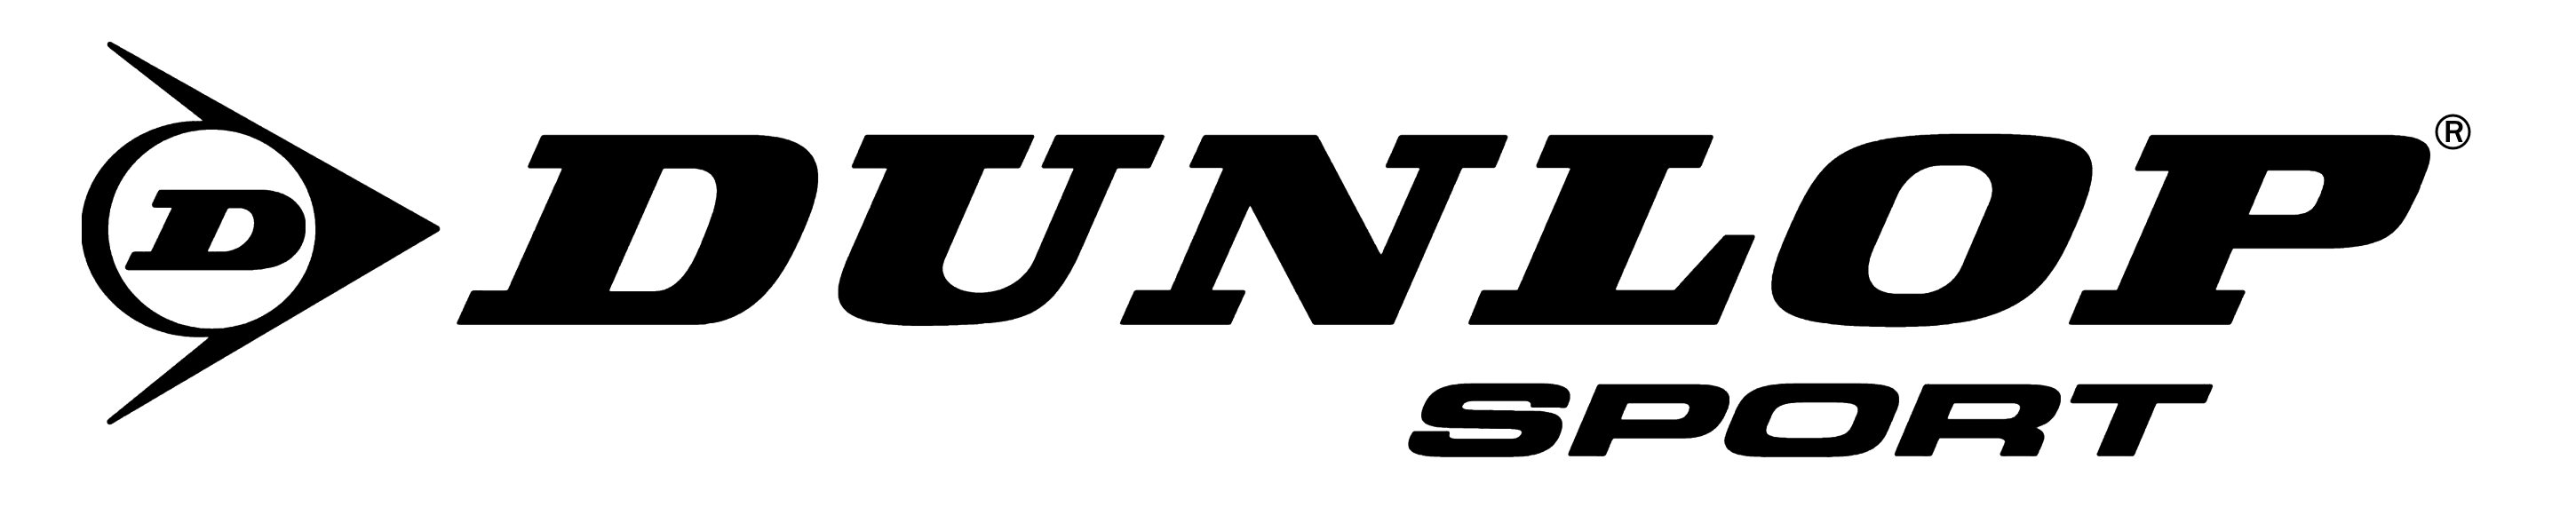 Dunlop Sport logo, logotype